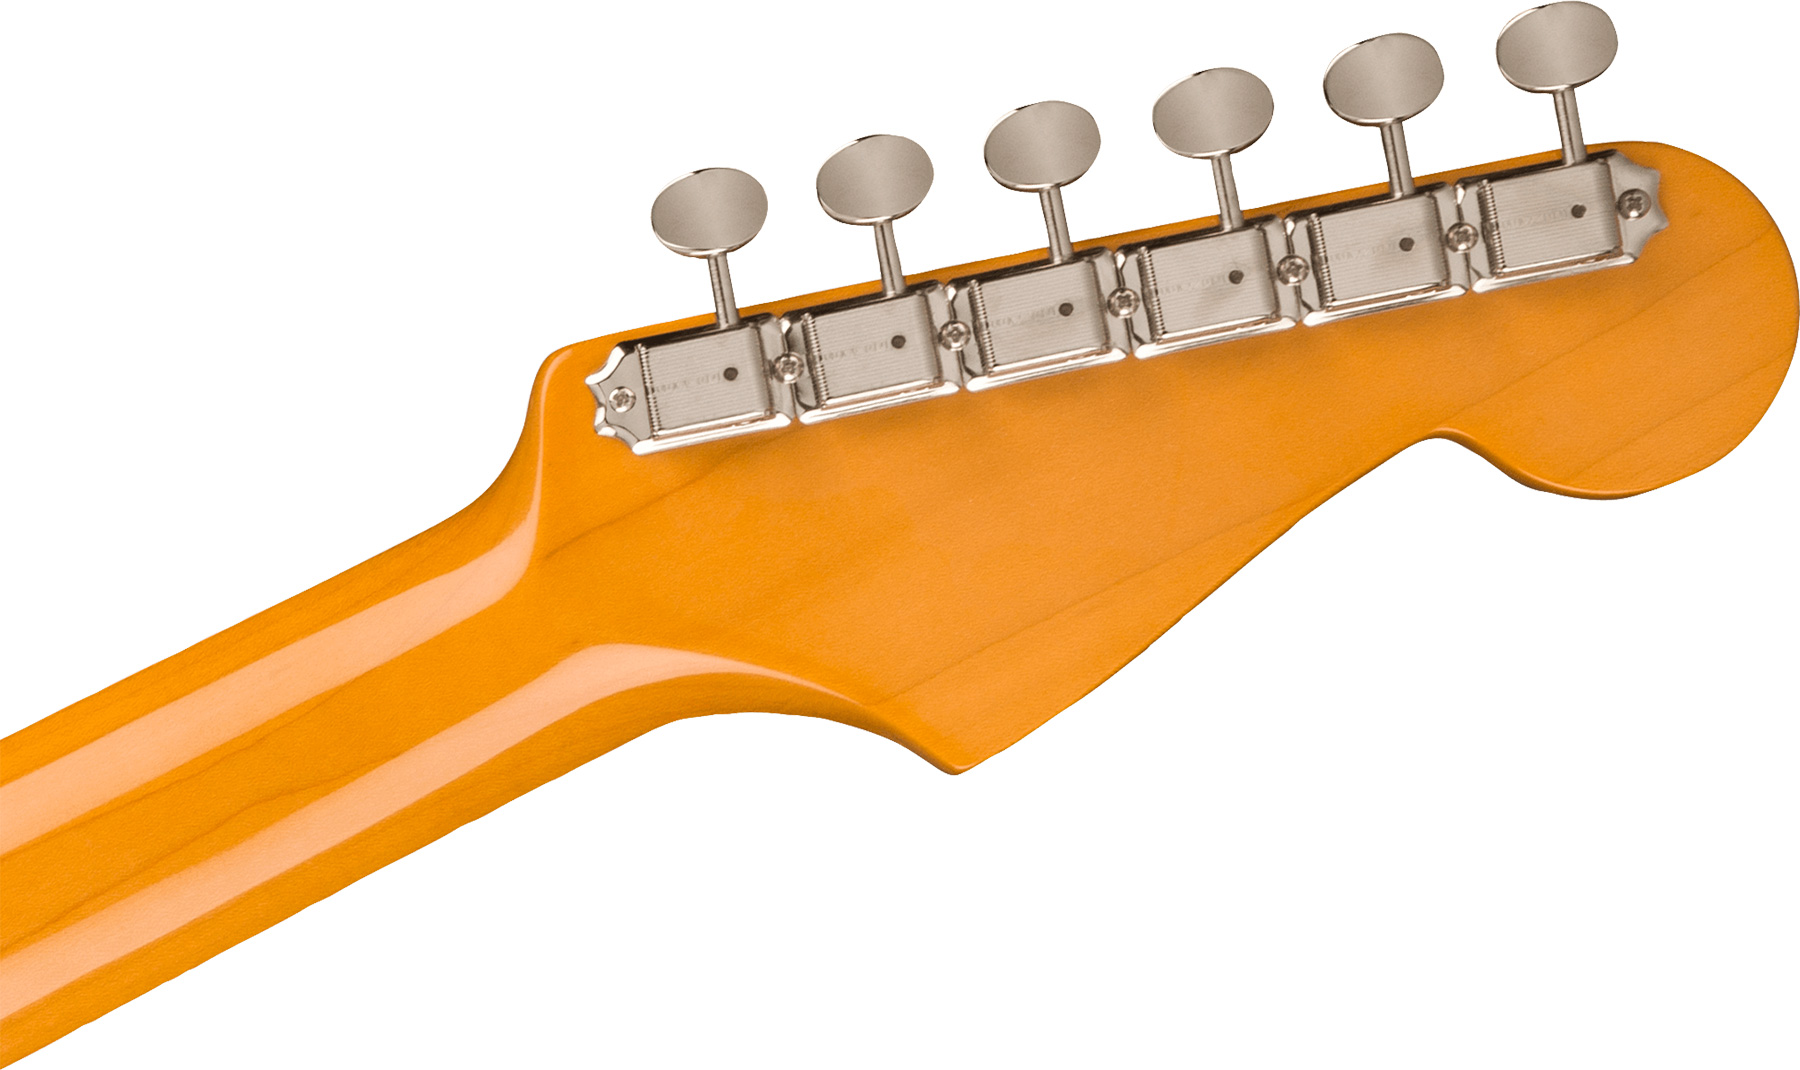 Fender Strat 1961 American Vintage Ii Lh Gaucher Usa 3s Trem Rw - Olympic White - Guitarra electrica para zurdos - Variation 3